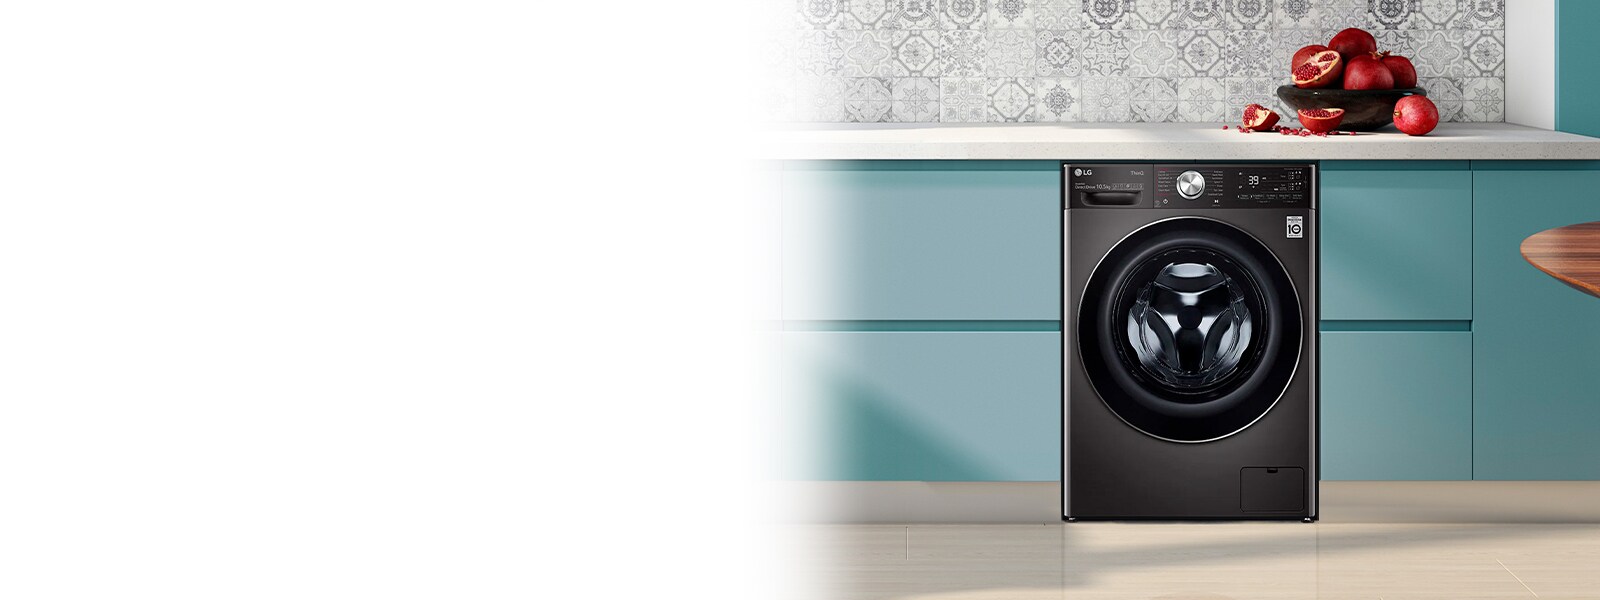 arm Lastig schild Washing Machine Buying Guide: Best Washers | LG Benelux Nederlands